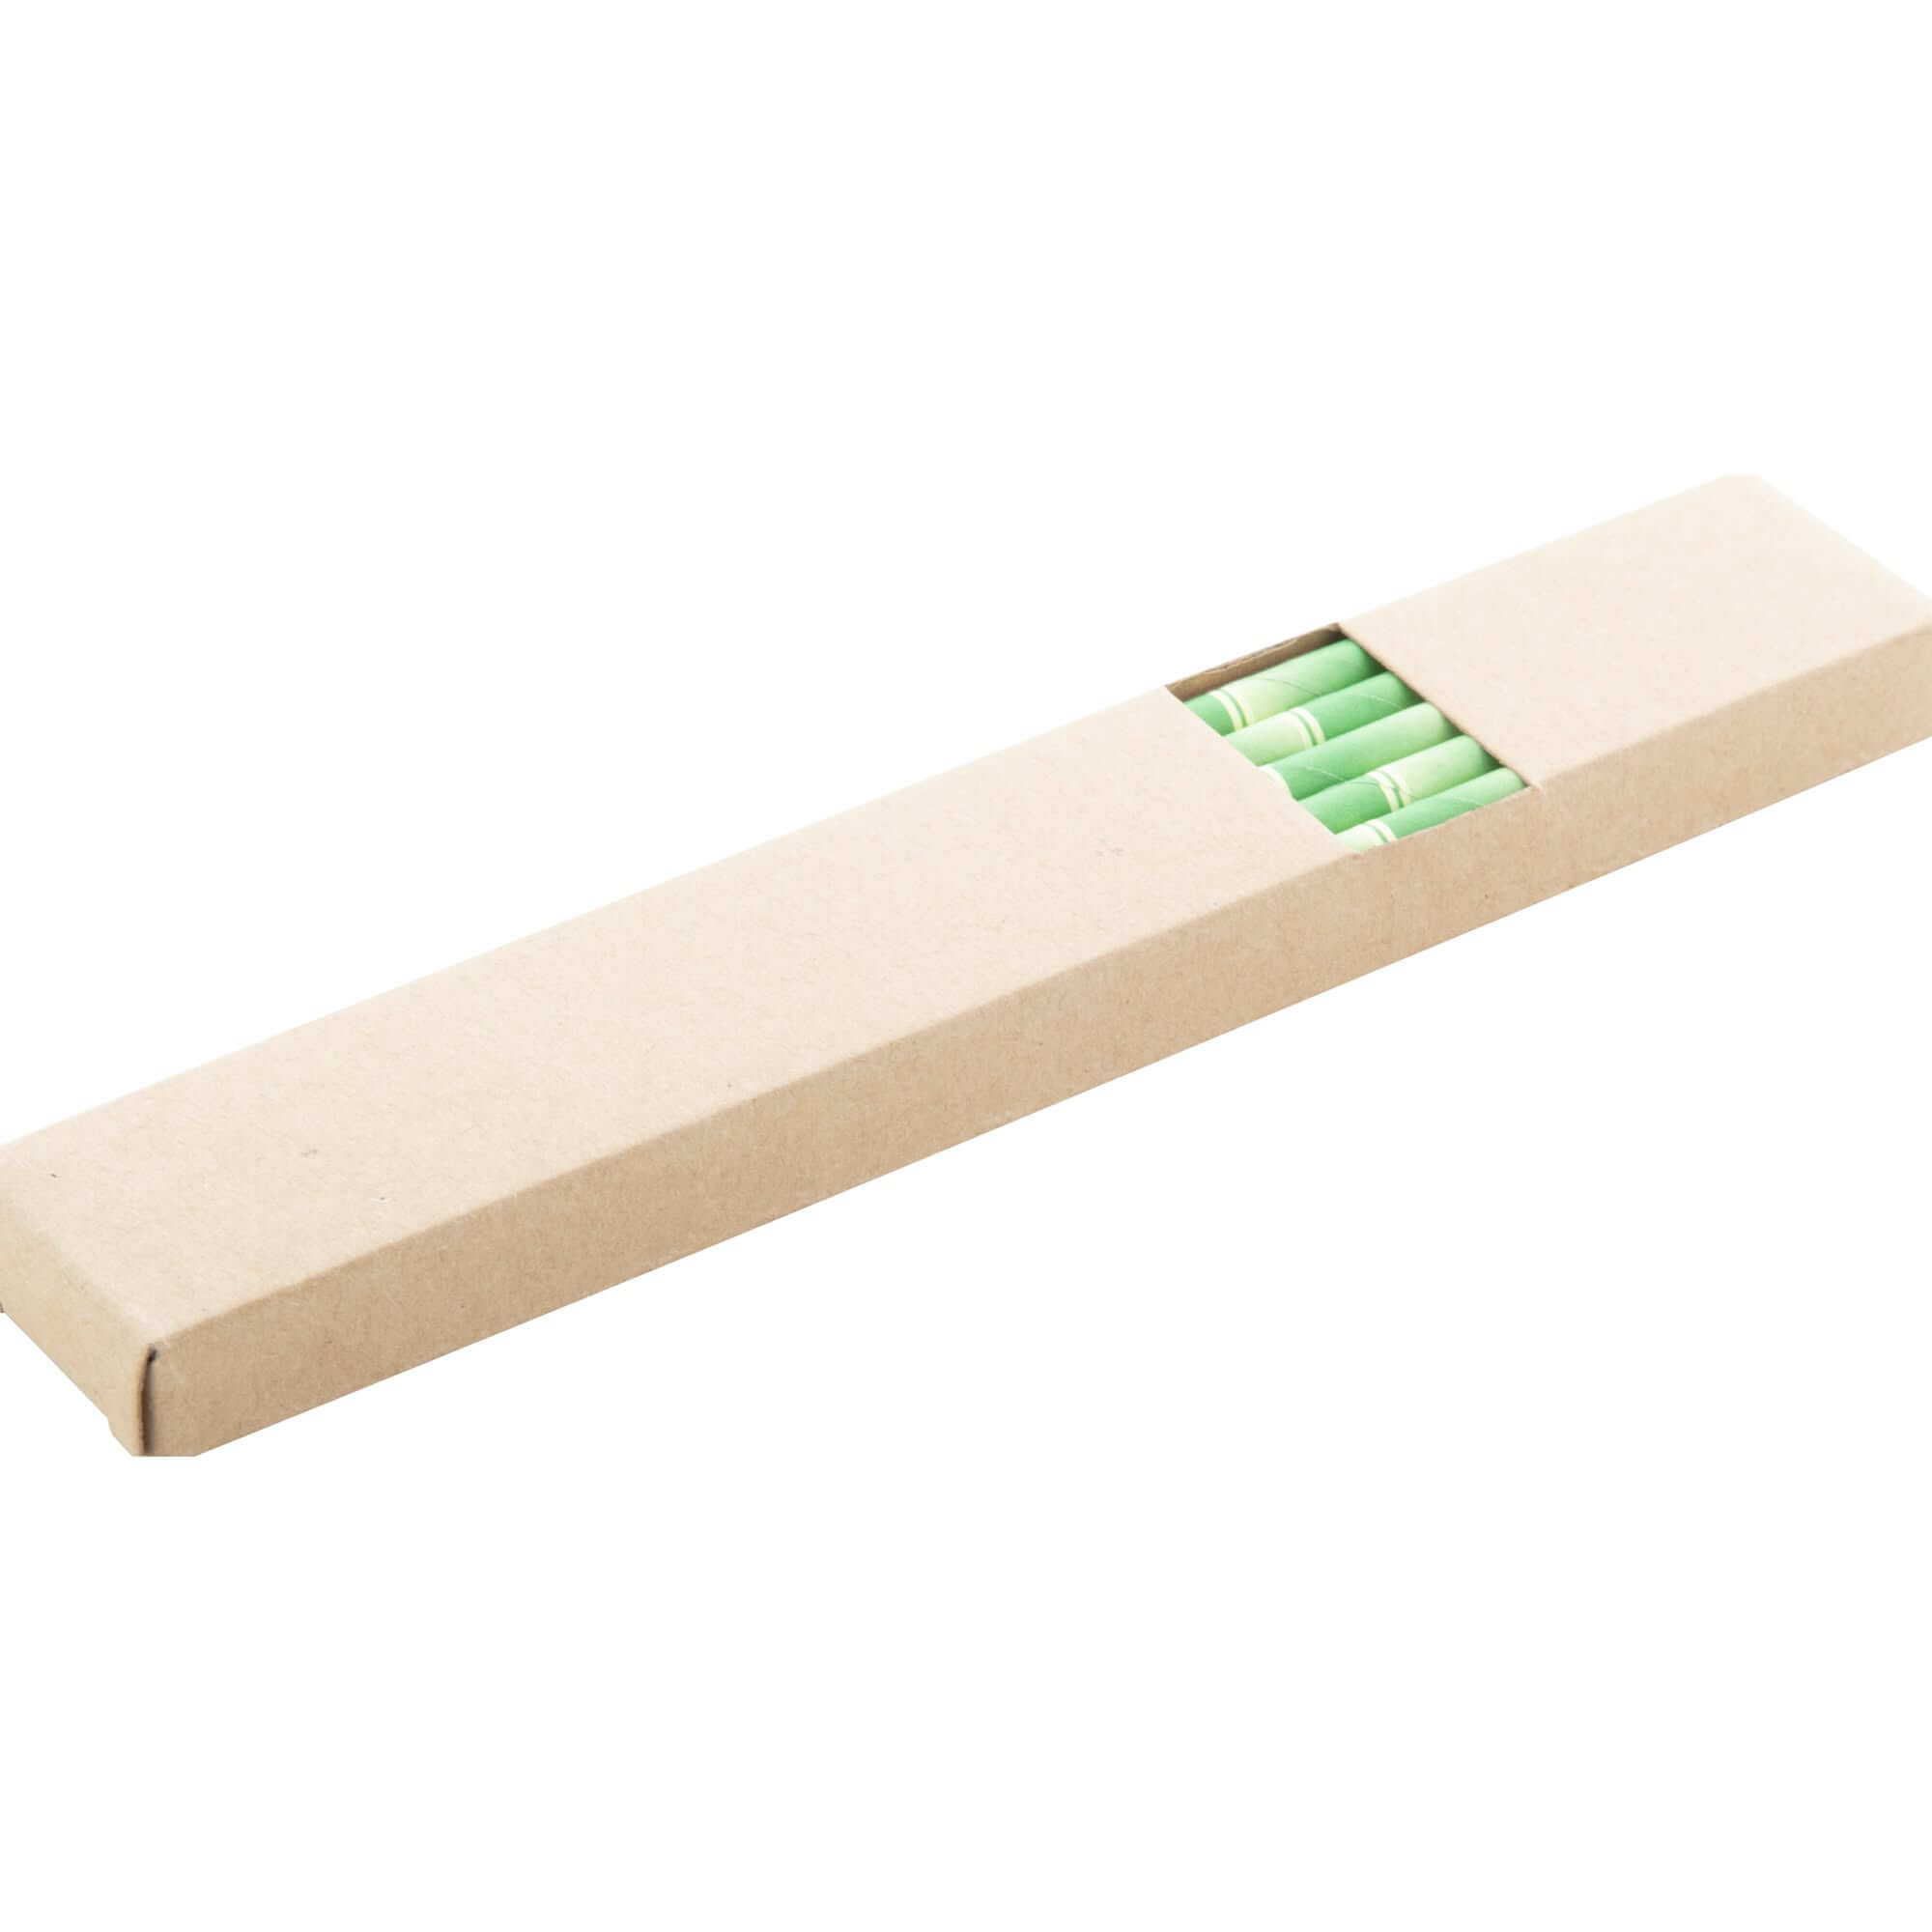 Trinkhalm-Set Papier-Trinkhalme 200mm mit Bambusmuster (10 Stück) verpackt in einer Pappschachtel